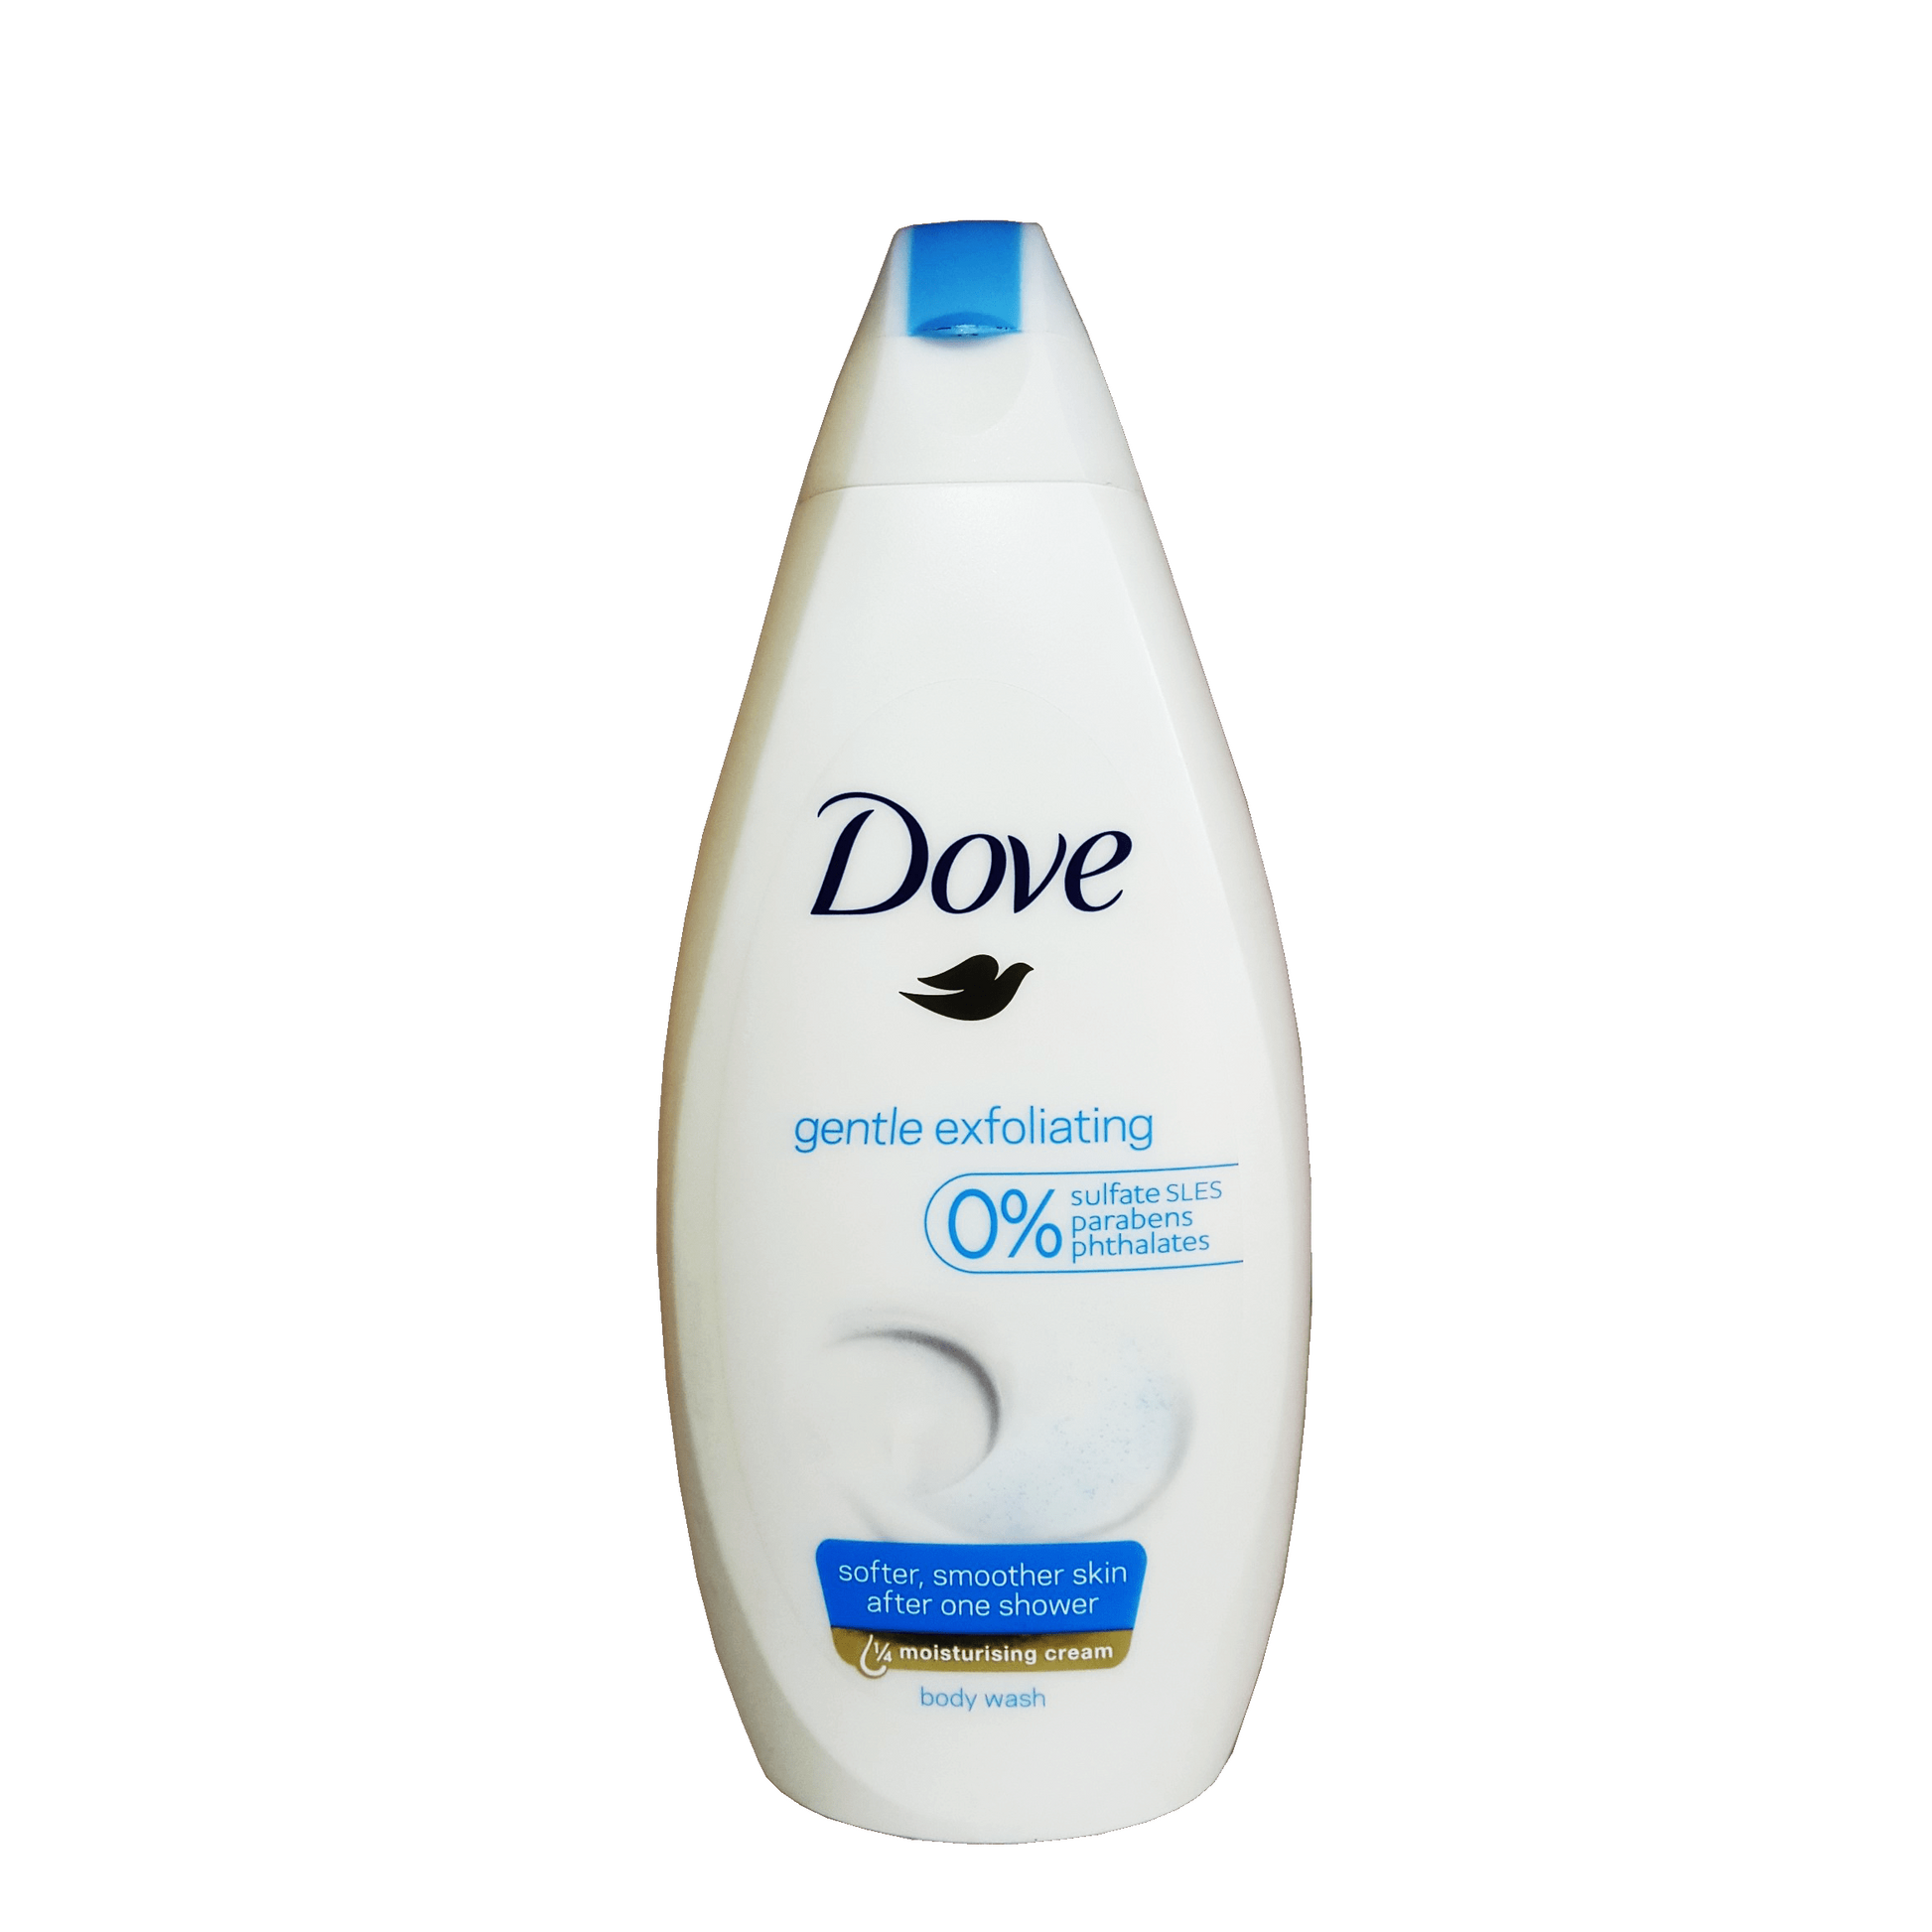 500 millilitre bottle of dove gentle exfoliating shower gel